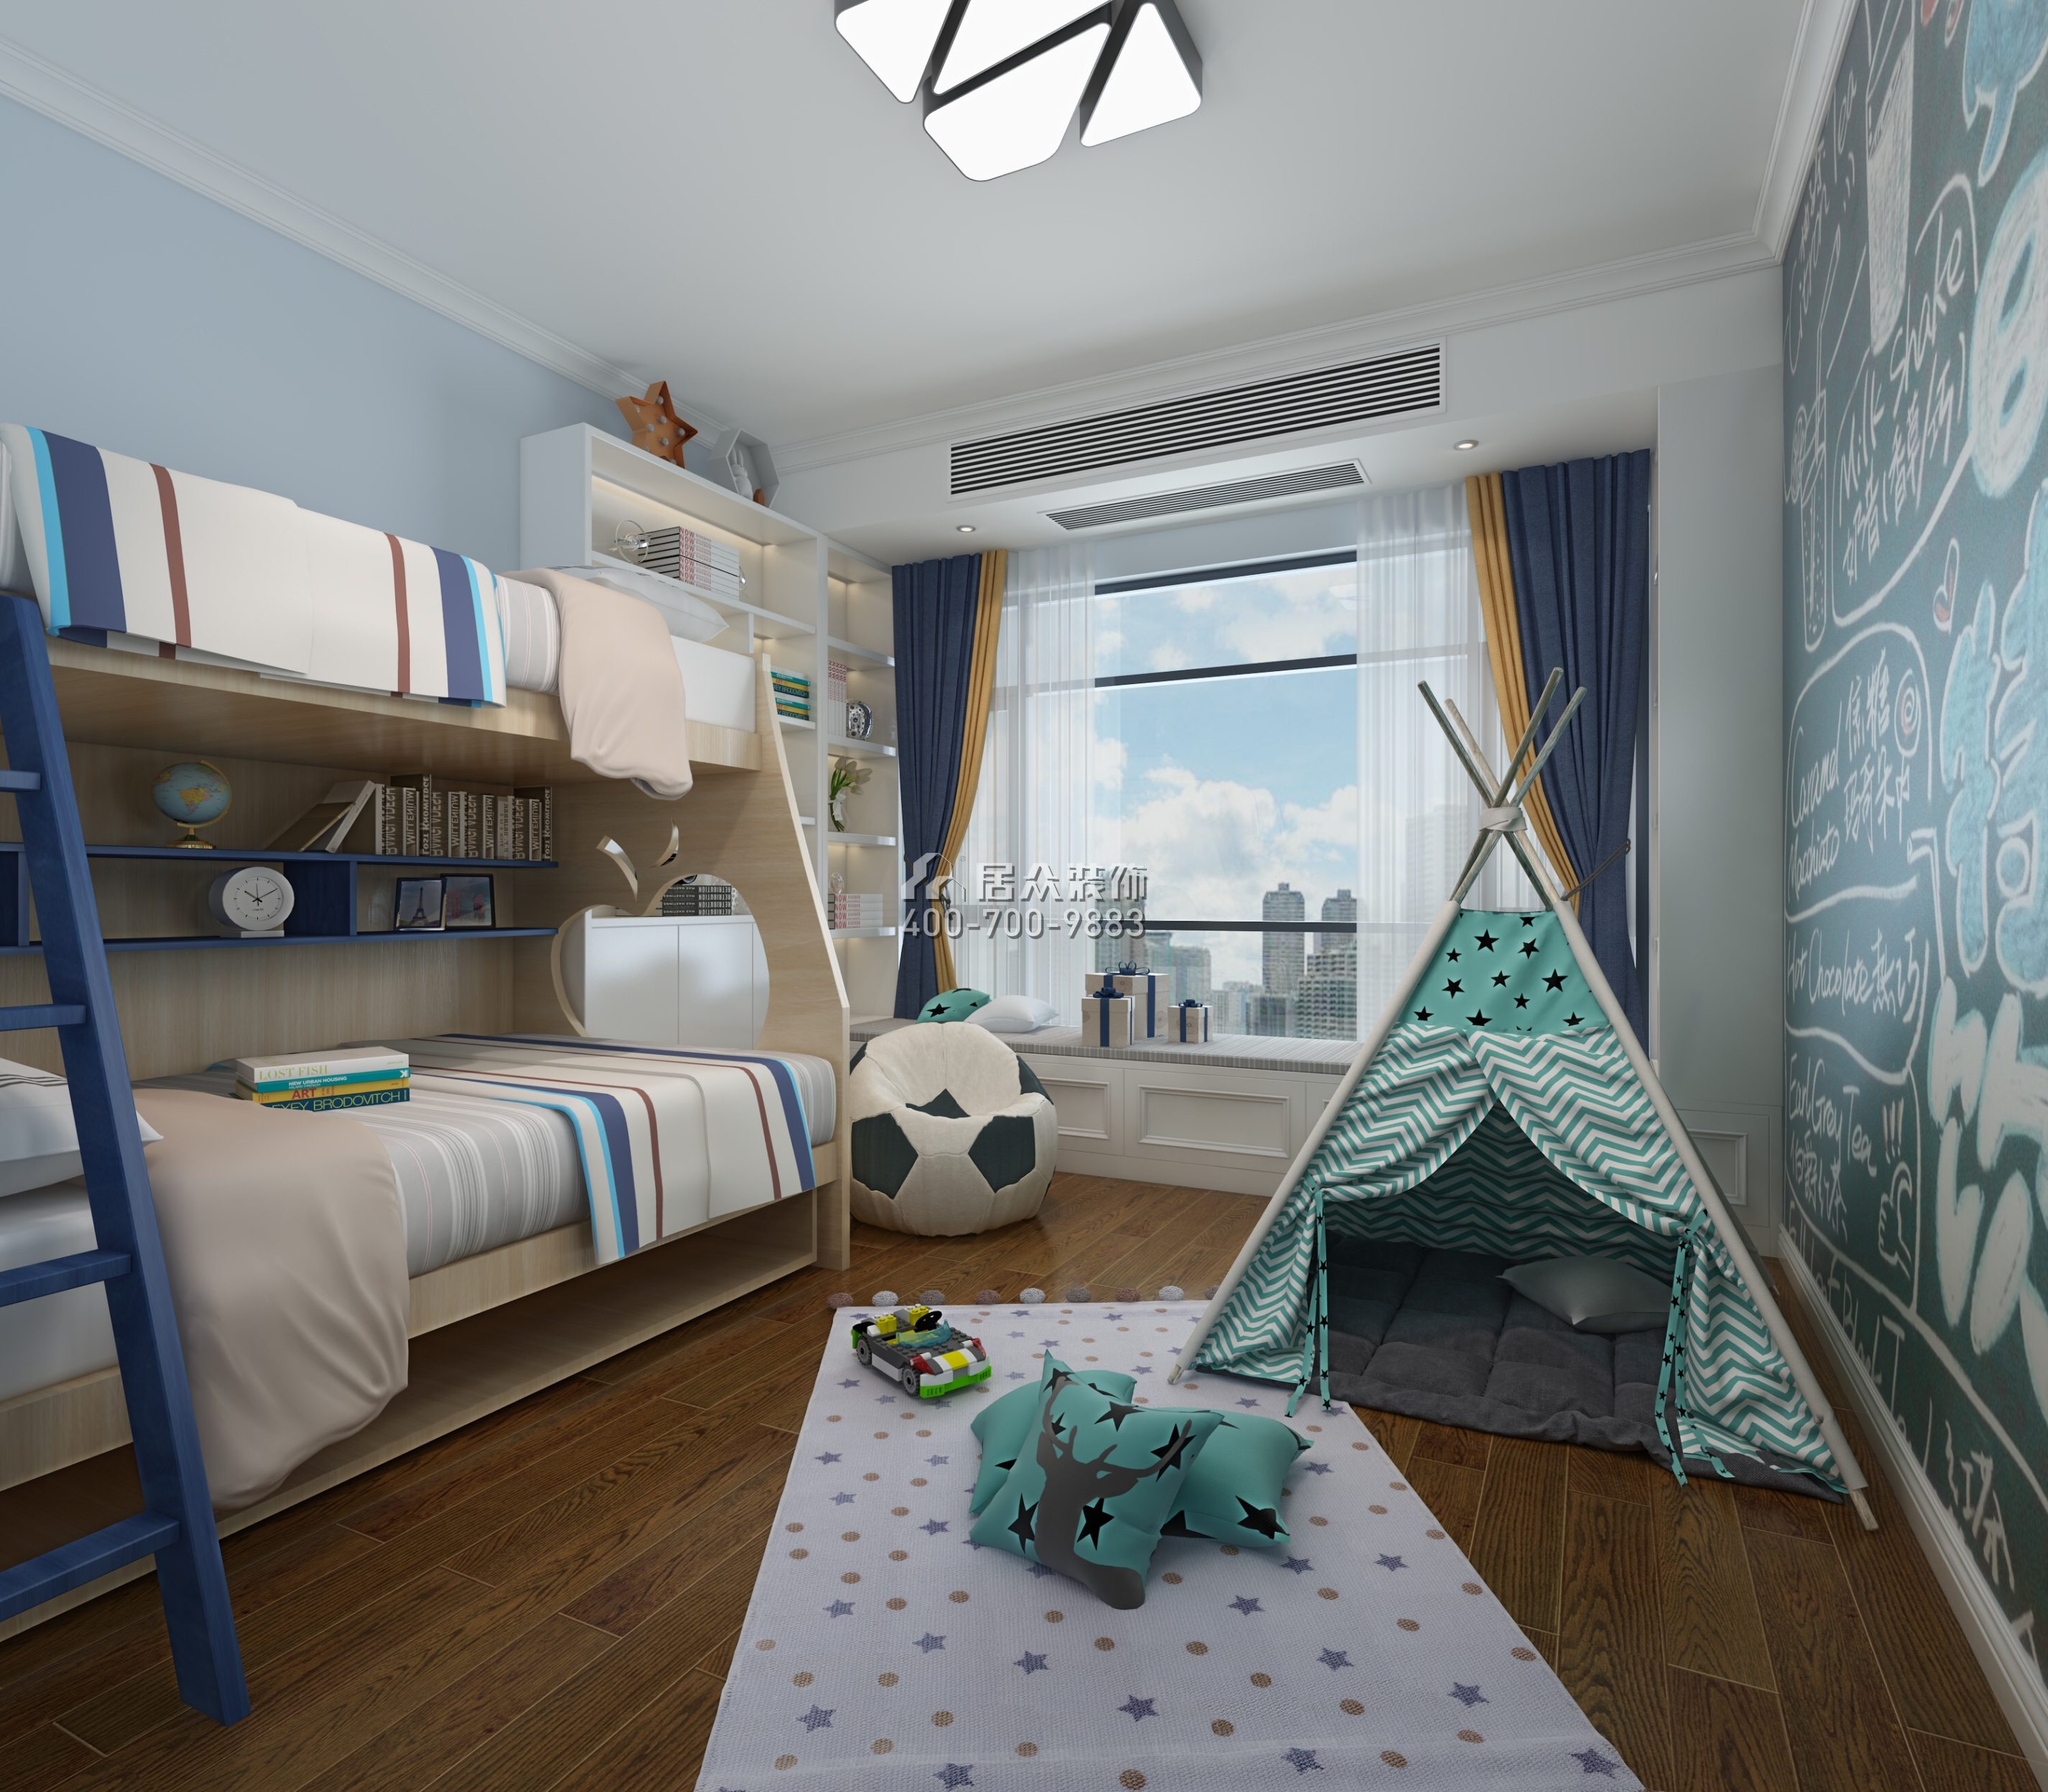 方直瓏湖灣163平方米中式風格平層戶型兒童房裝修效果圖